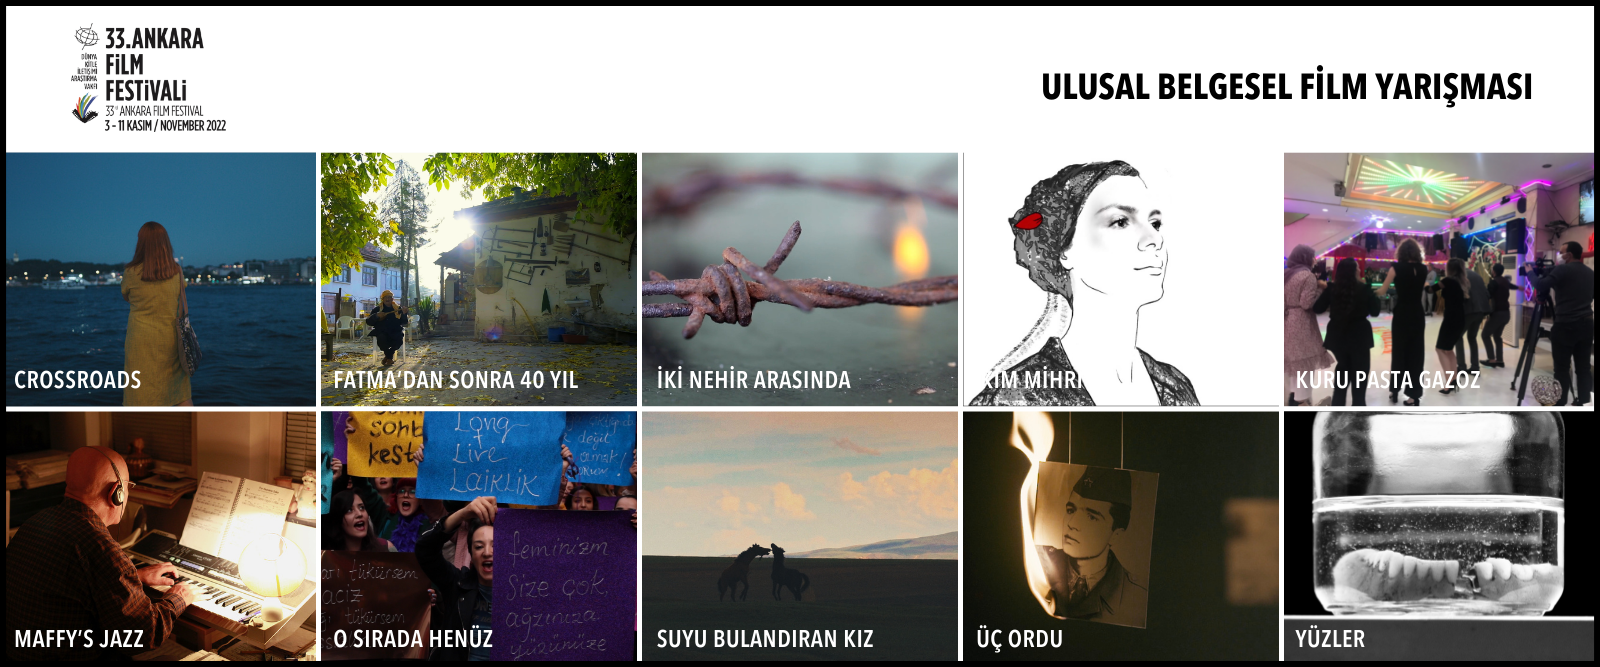 33. Ankara Fİlm Festivali'nde Yarışacak Ulusal Belgesel Film Finalistleri Belirlendi